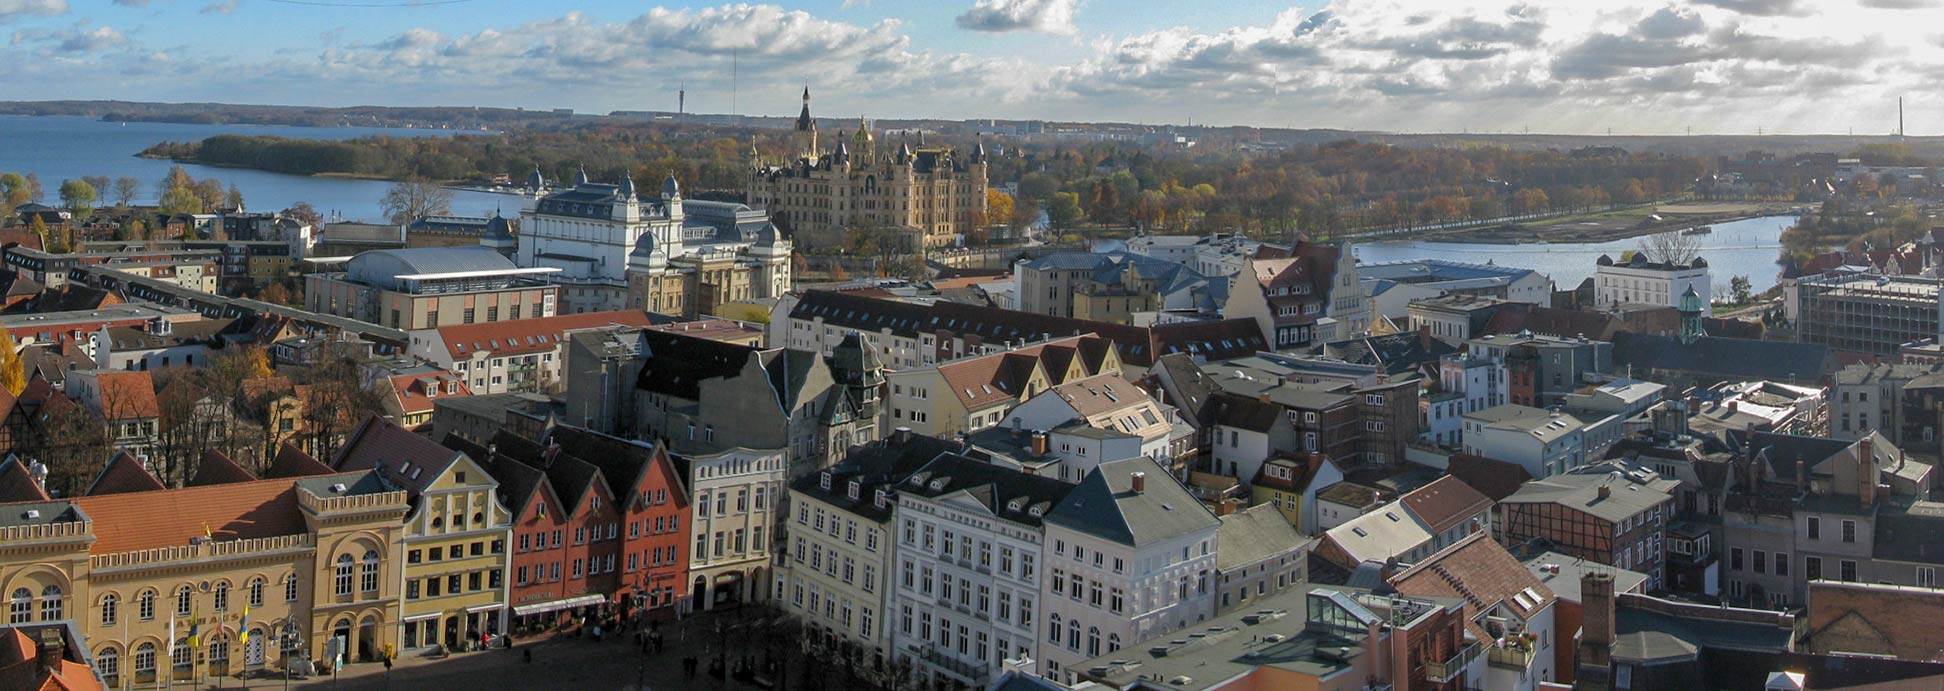 Panorama of Schwerin with Schwerin Castle